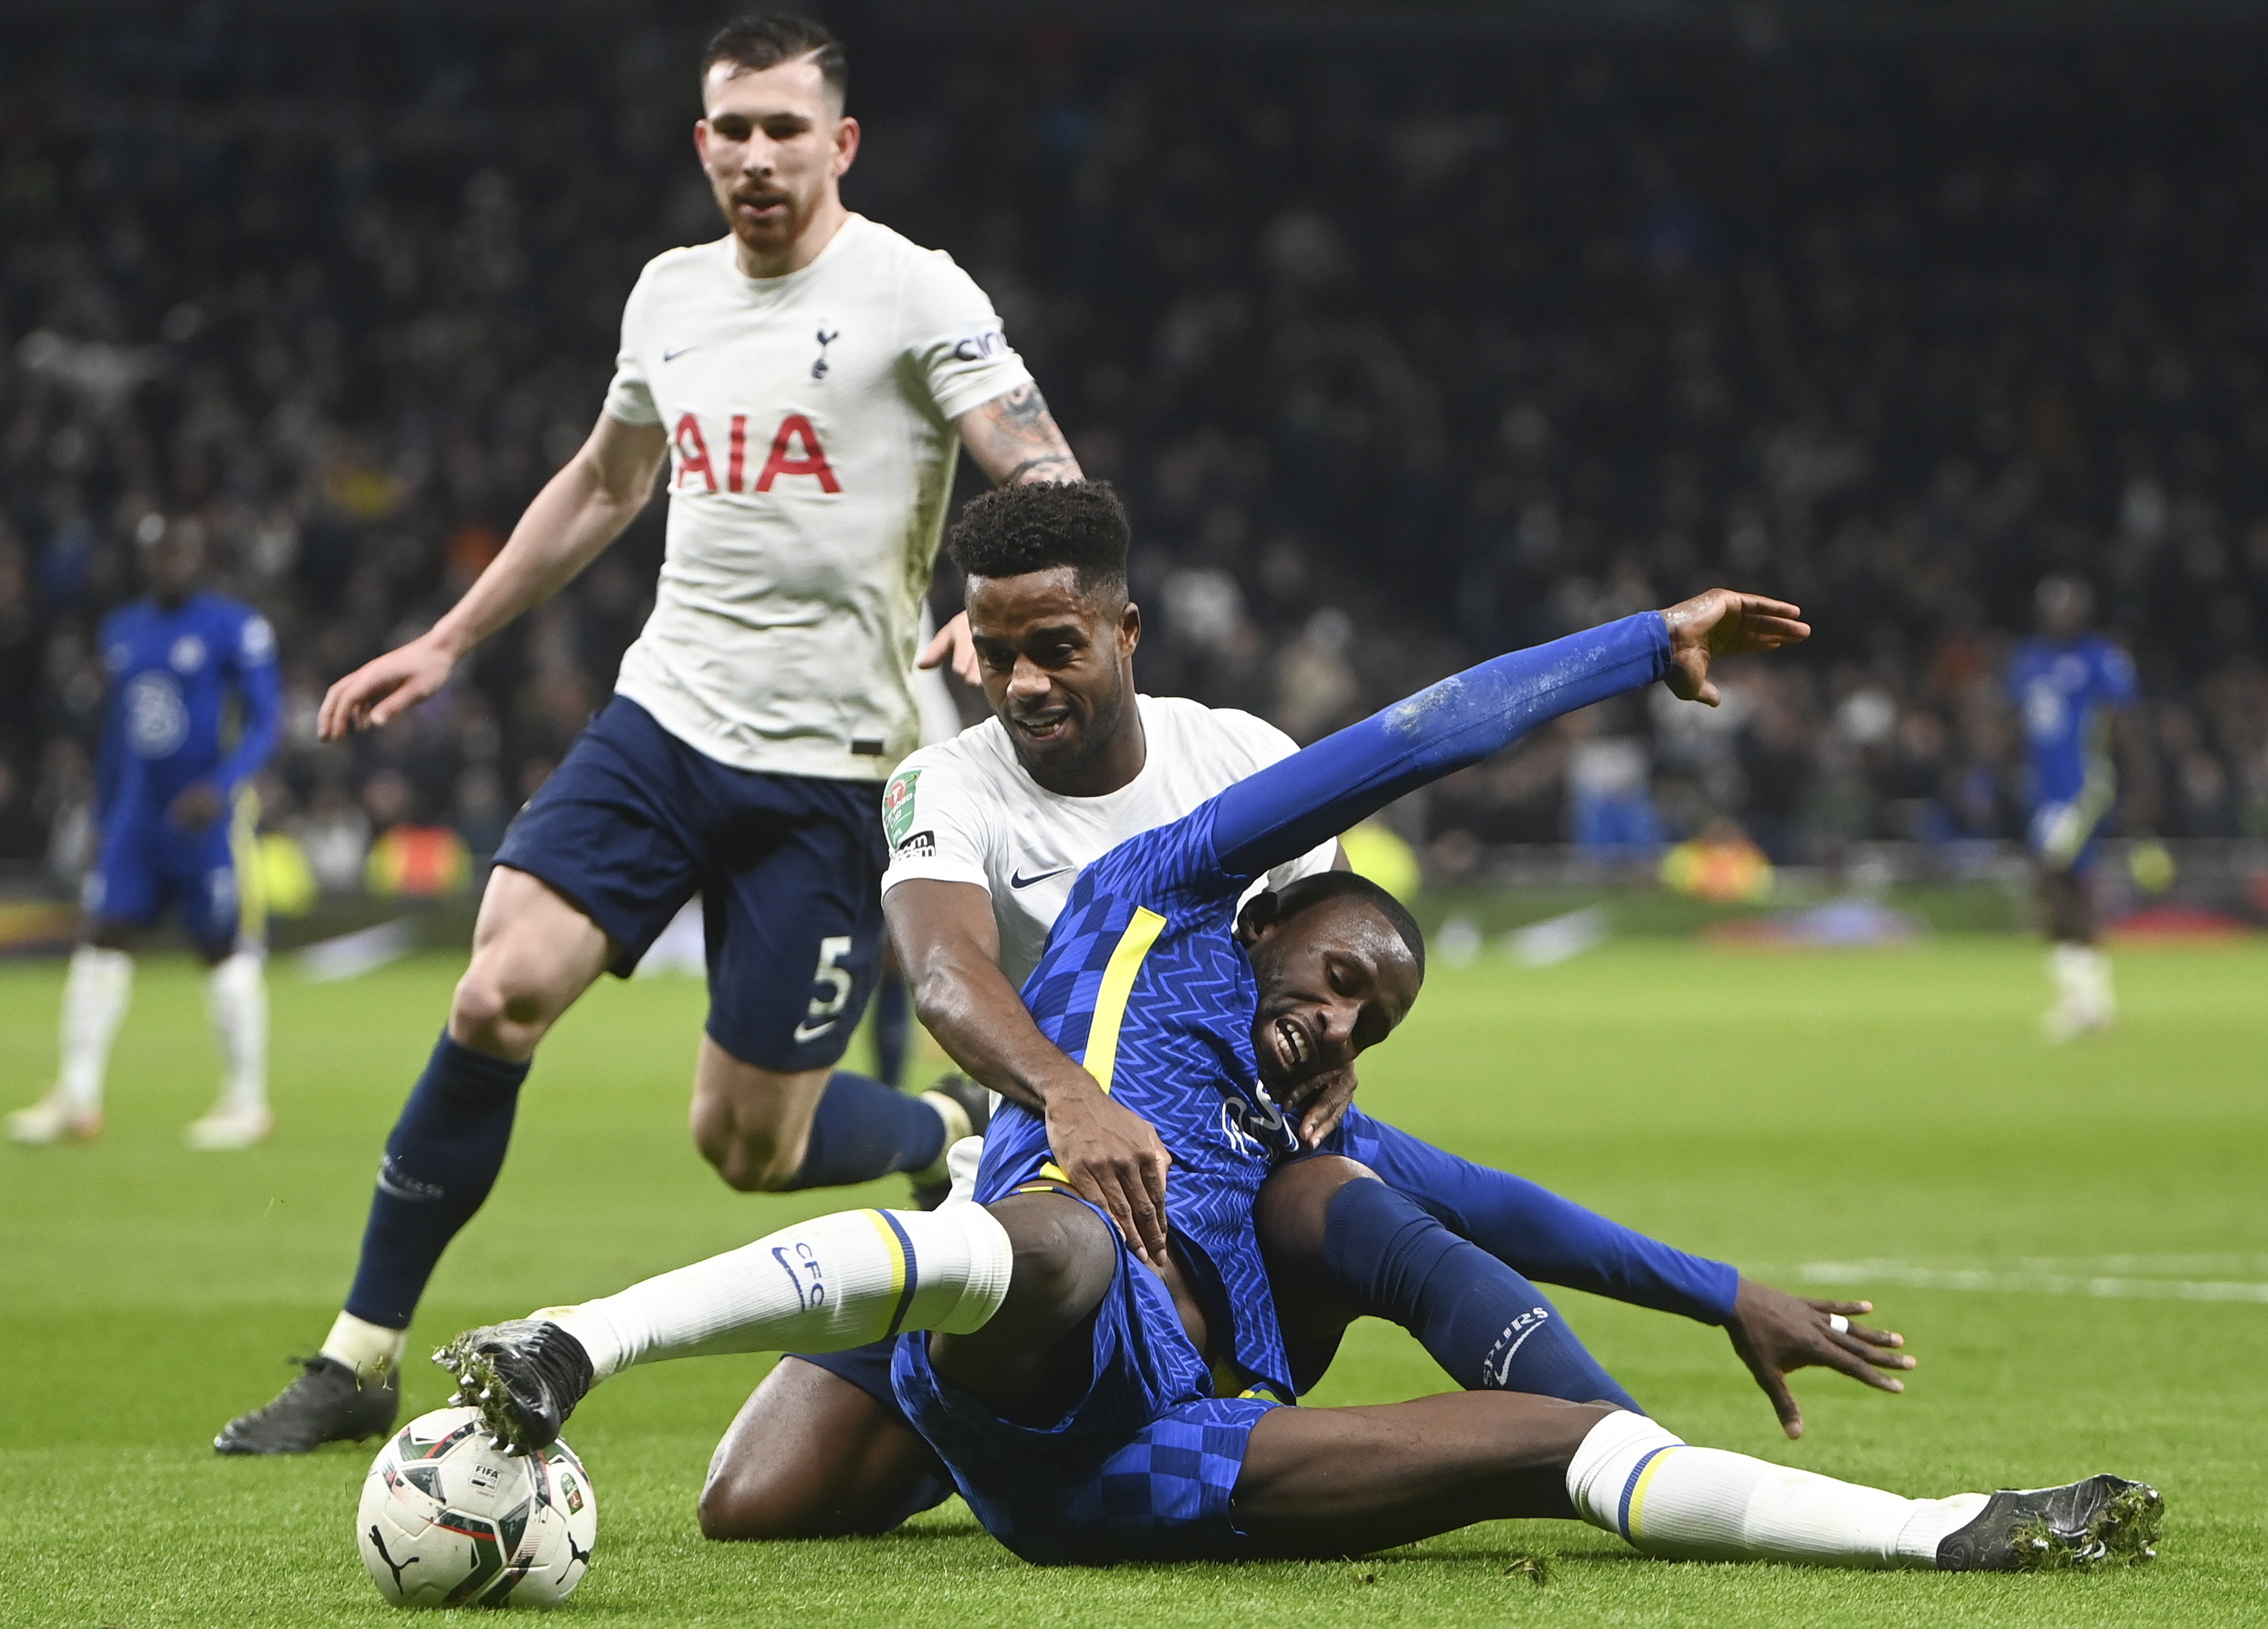 Puchar Ligi Angielskiej: Chelsea w finale! Tottenham nie miał szans -  Przegląd Sportowy